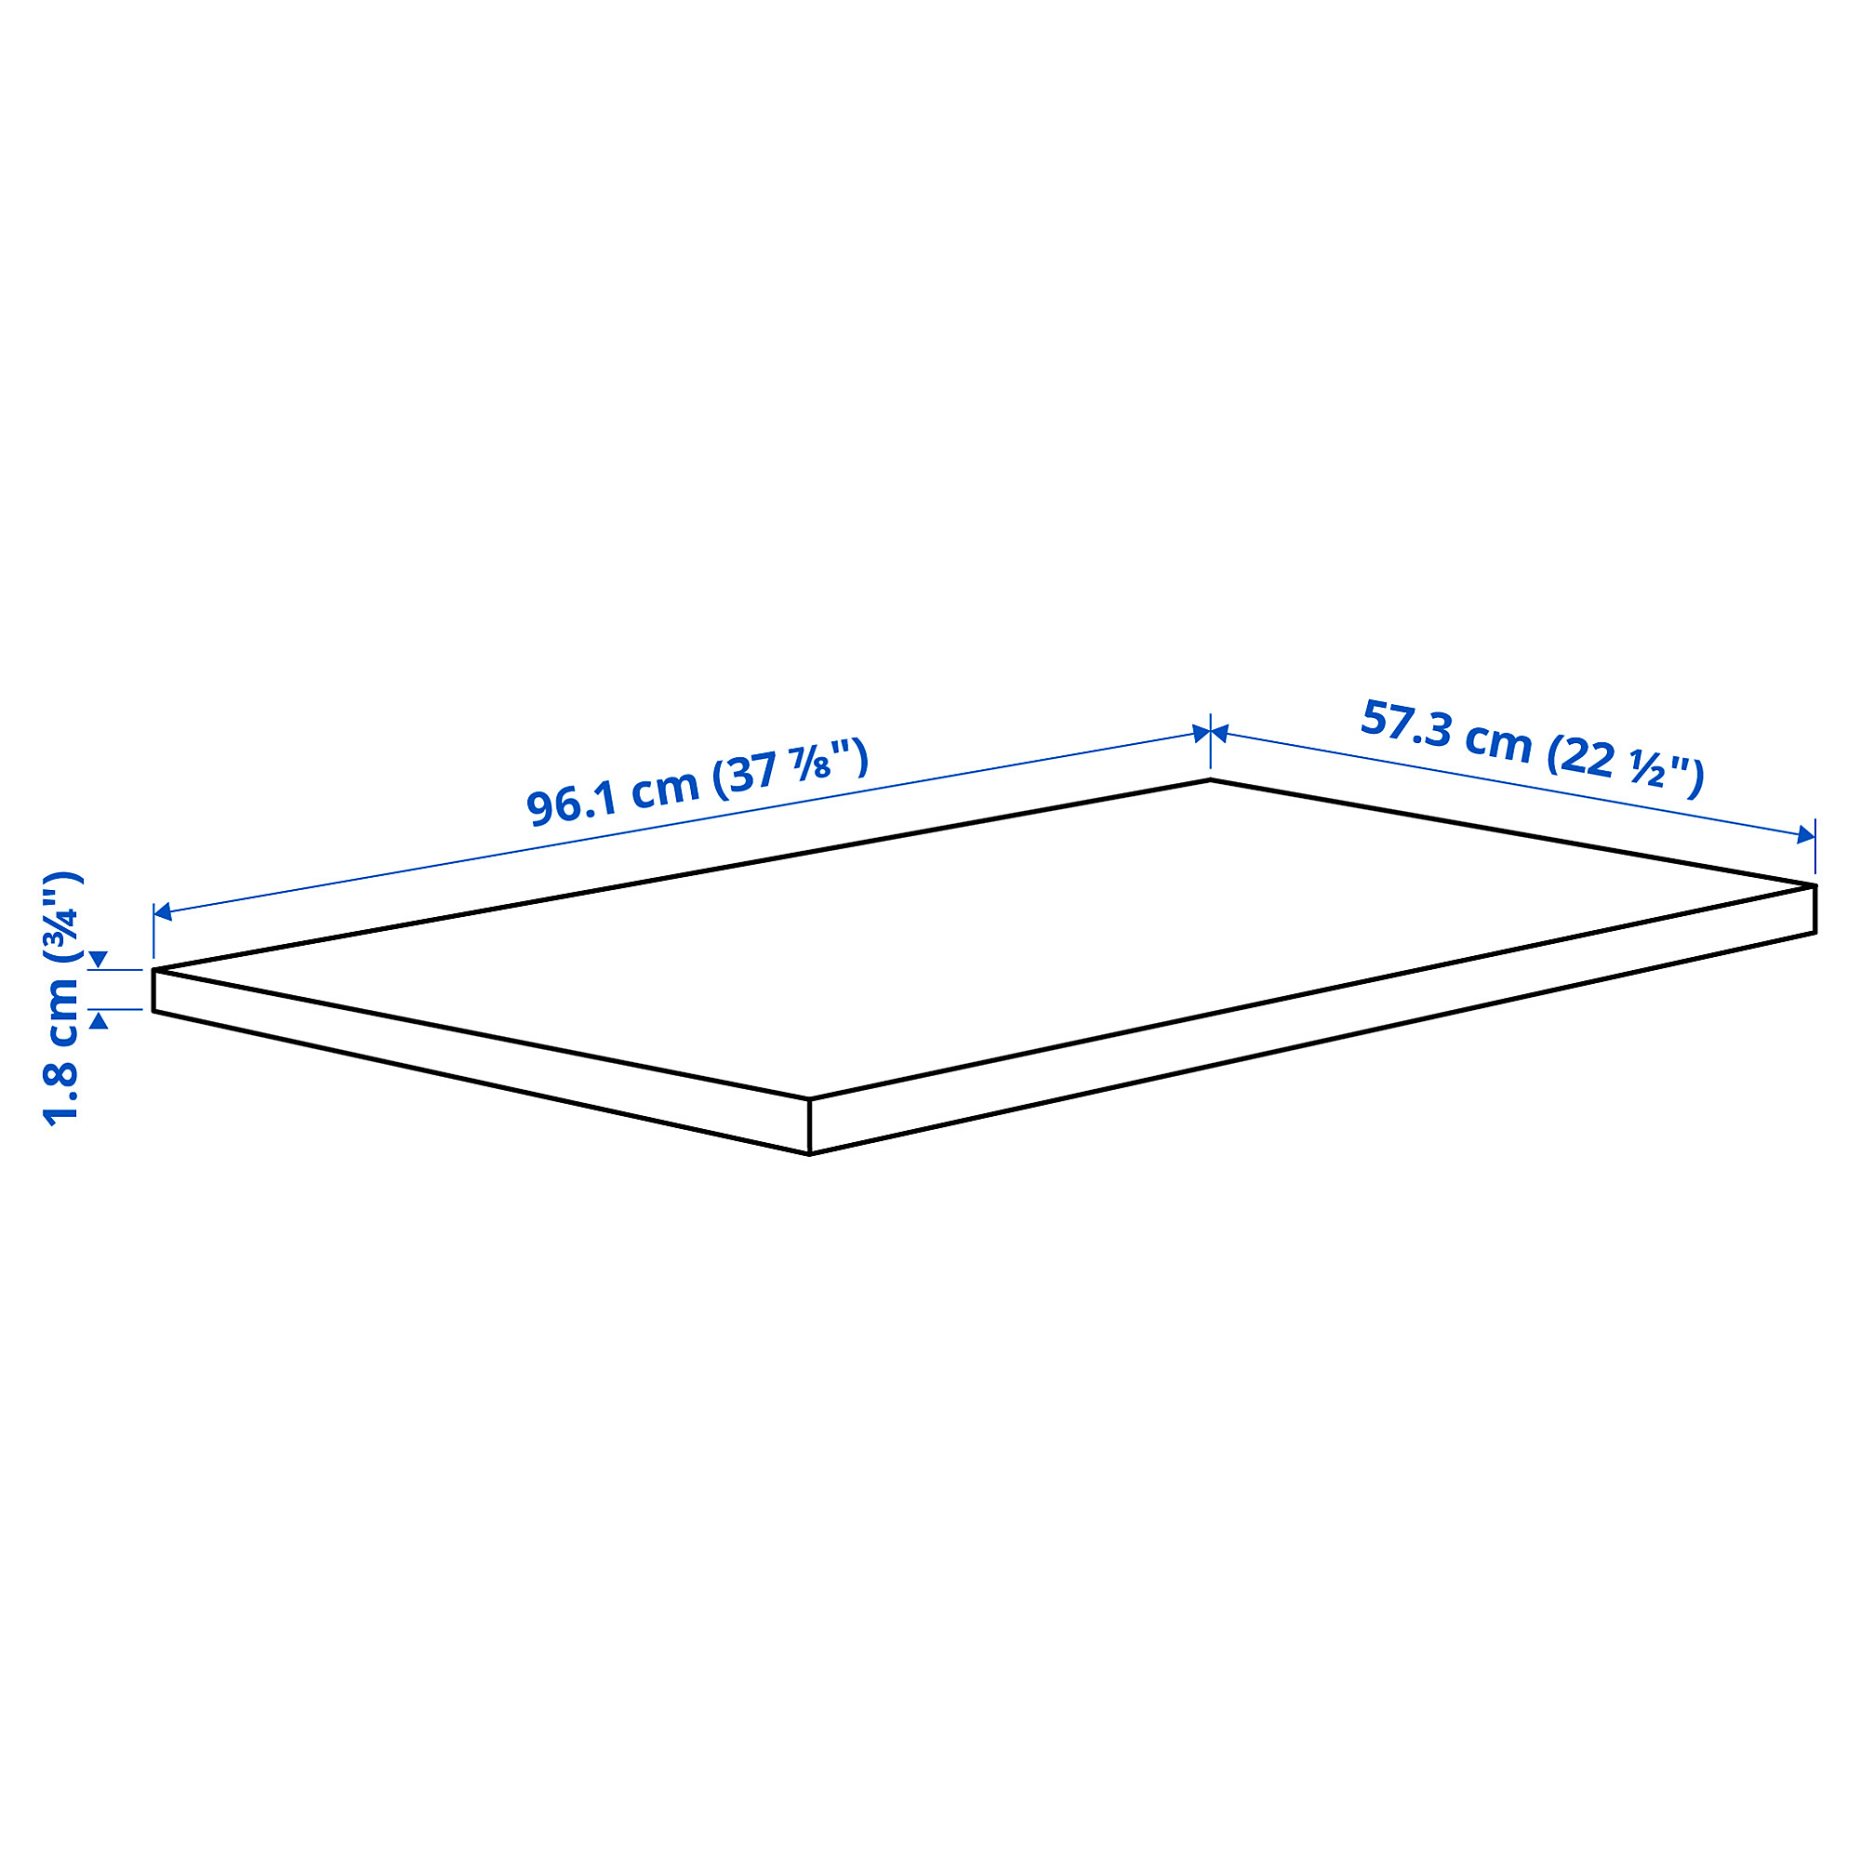 KOMPLEMENT, shelf, 100x58 cm, 605.091.42